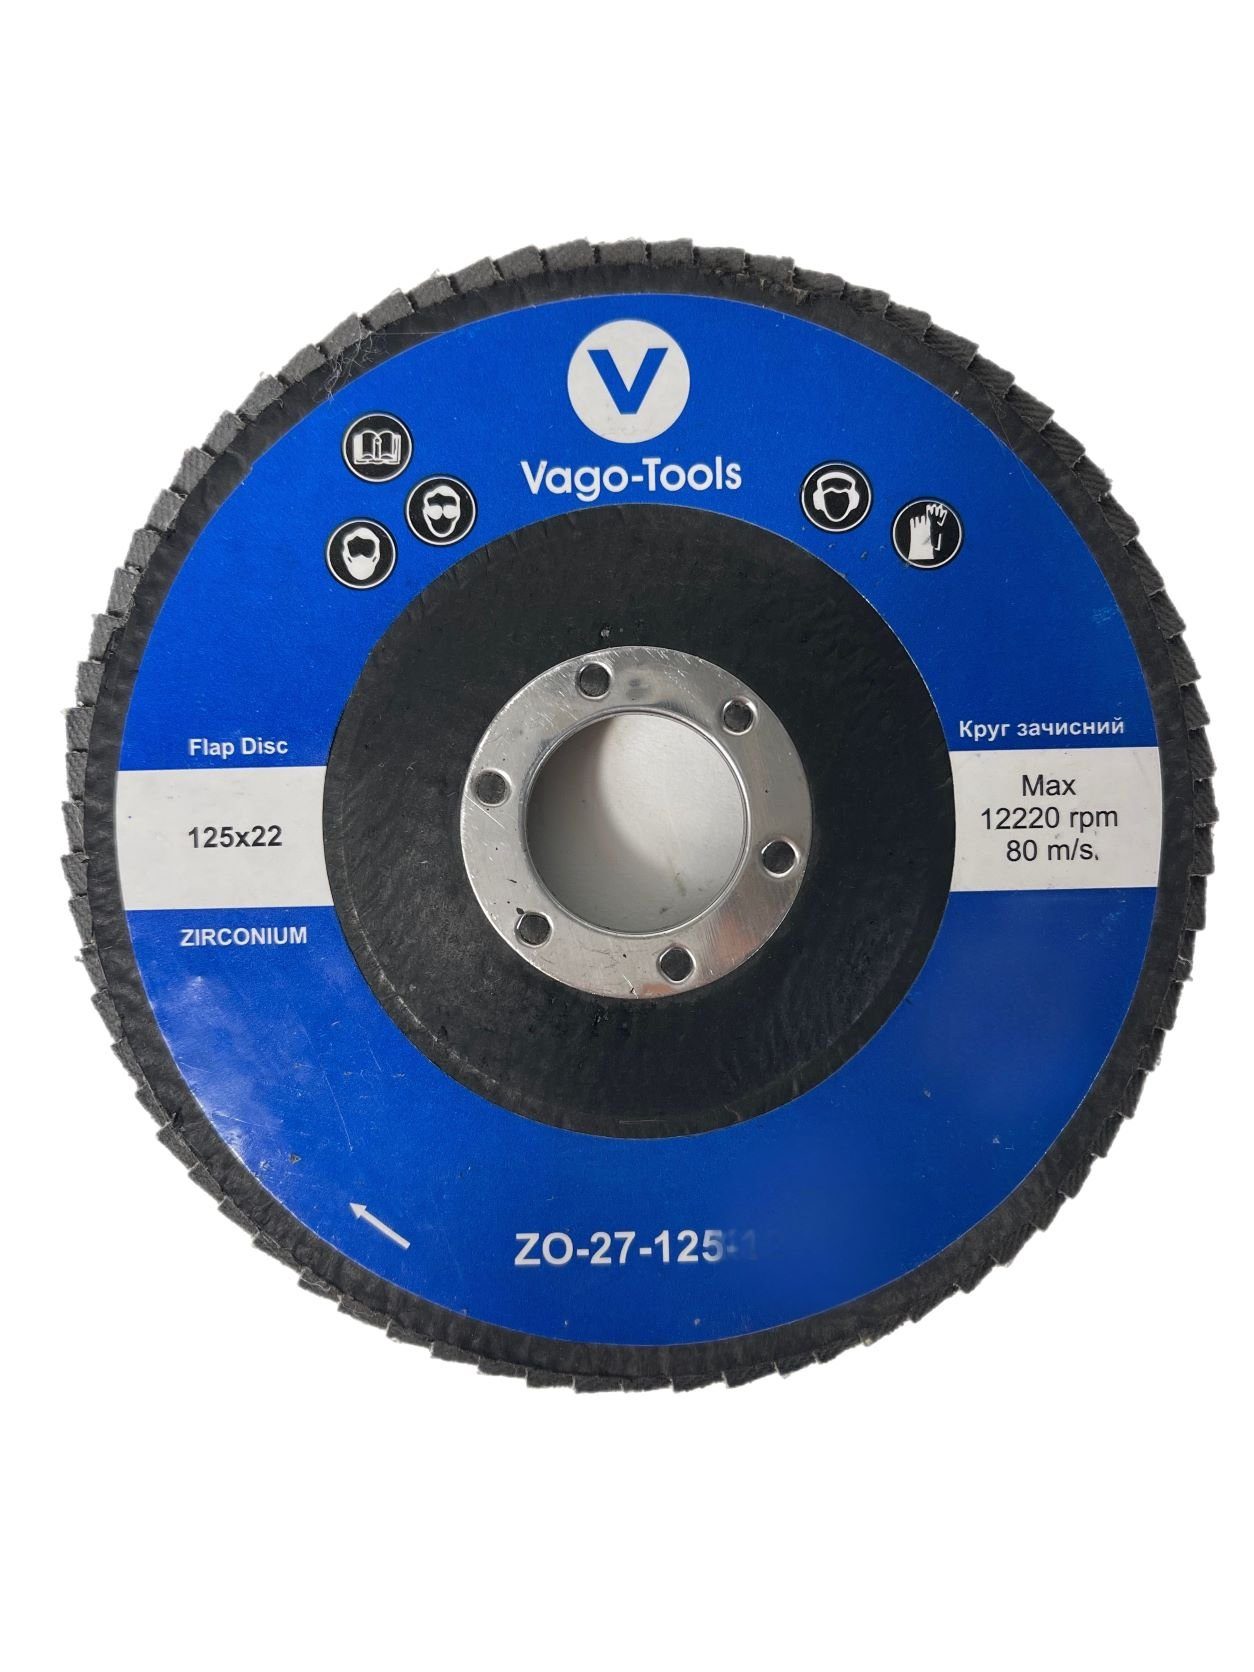 VaGo-Tools Schleifscheibe Fächerschleifscheiben 125mm P80 flach Blau 10x, (Packung)